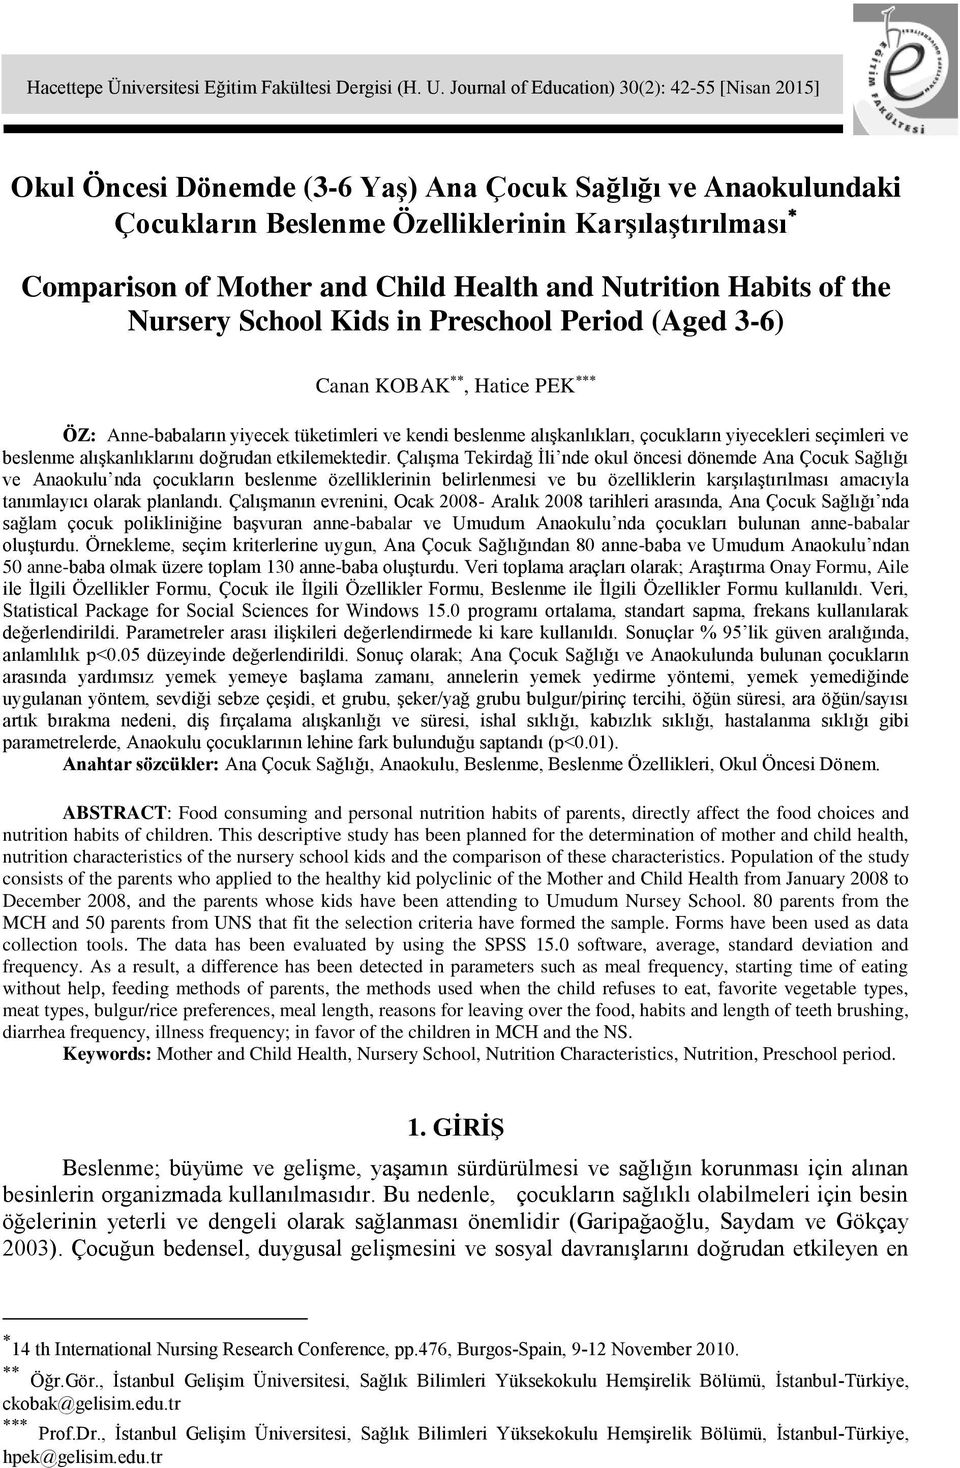 Health and Nutrition Habits of the Nursery School Kids in Preschool Period (Aged 3-6) Canan KOBAK, Hatice PEK ÖZ: Anne-babaların yiyecek tüketimleri ve kendi beslenme alışkanlıkları, çocukların